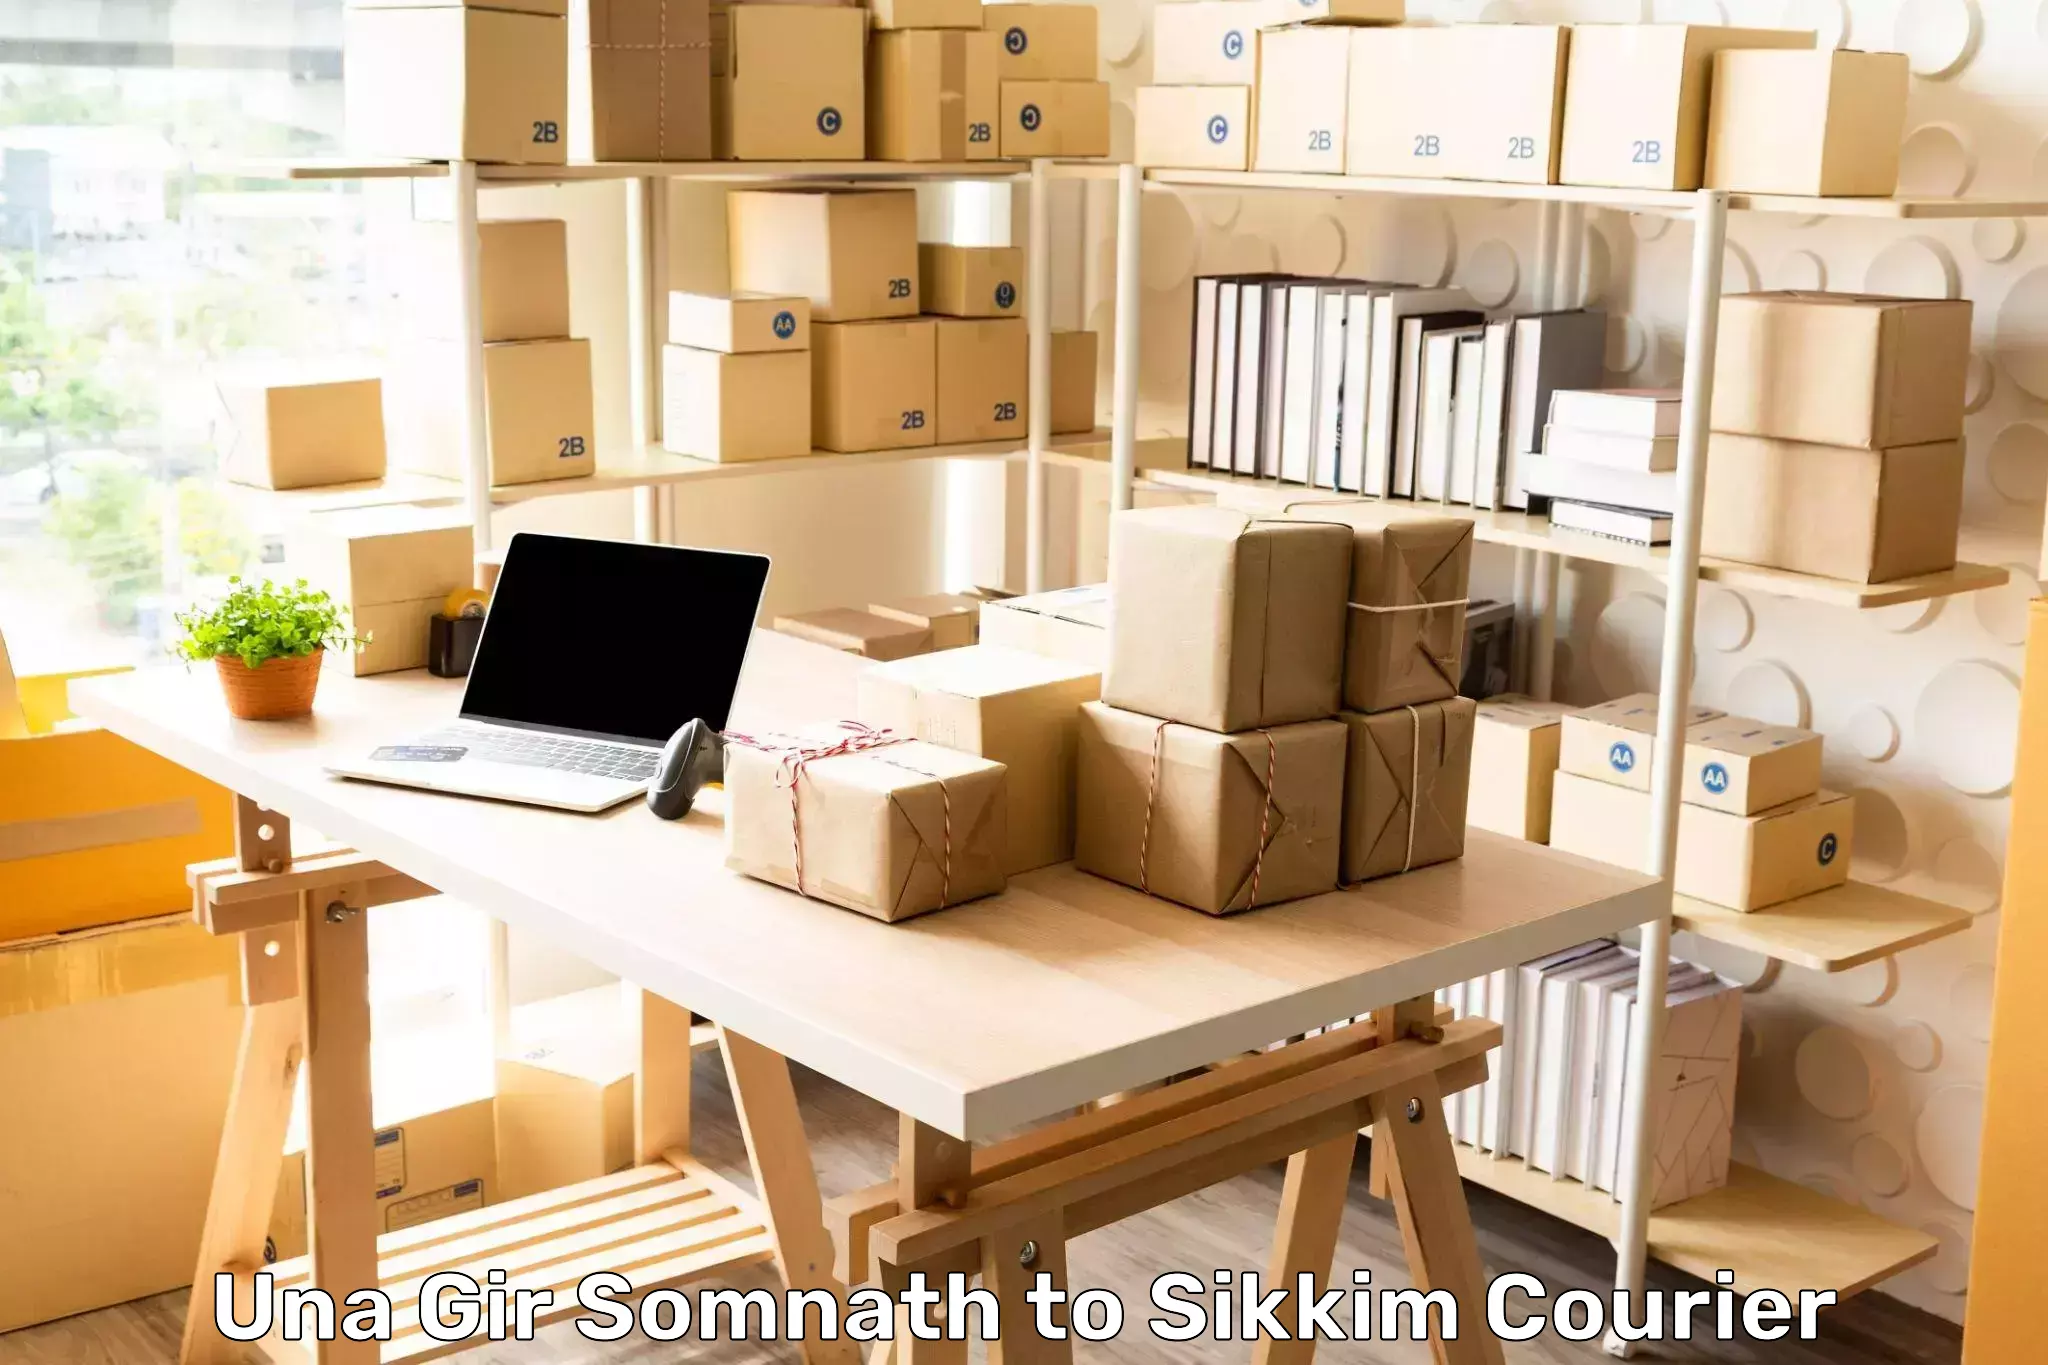 Premium courier services Una Gir Somnath to North Sikkim